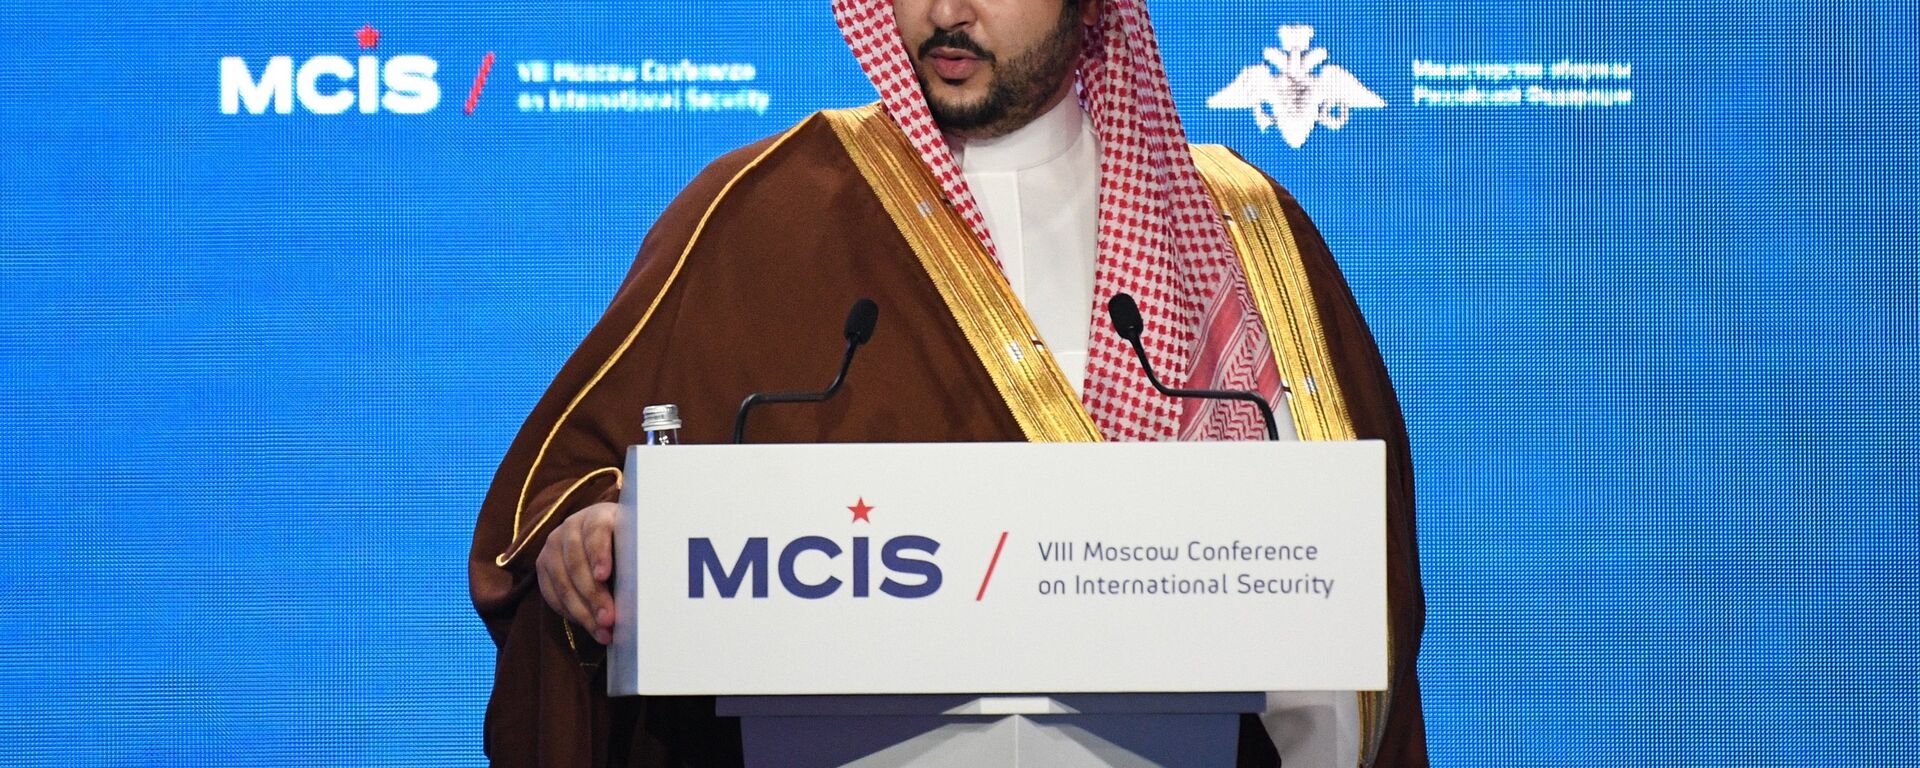  خالد بن سلمان آل سعود، نائب وزير الدفاع السعودي يلقي كلمة في مؤتمر الأمن الدولي الثامن بموسكو (24 أبريل/نيسان 2019) - سبوتنيك عربي, 1920, 20.05.2022